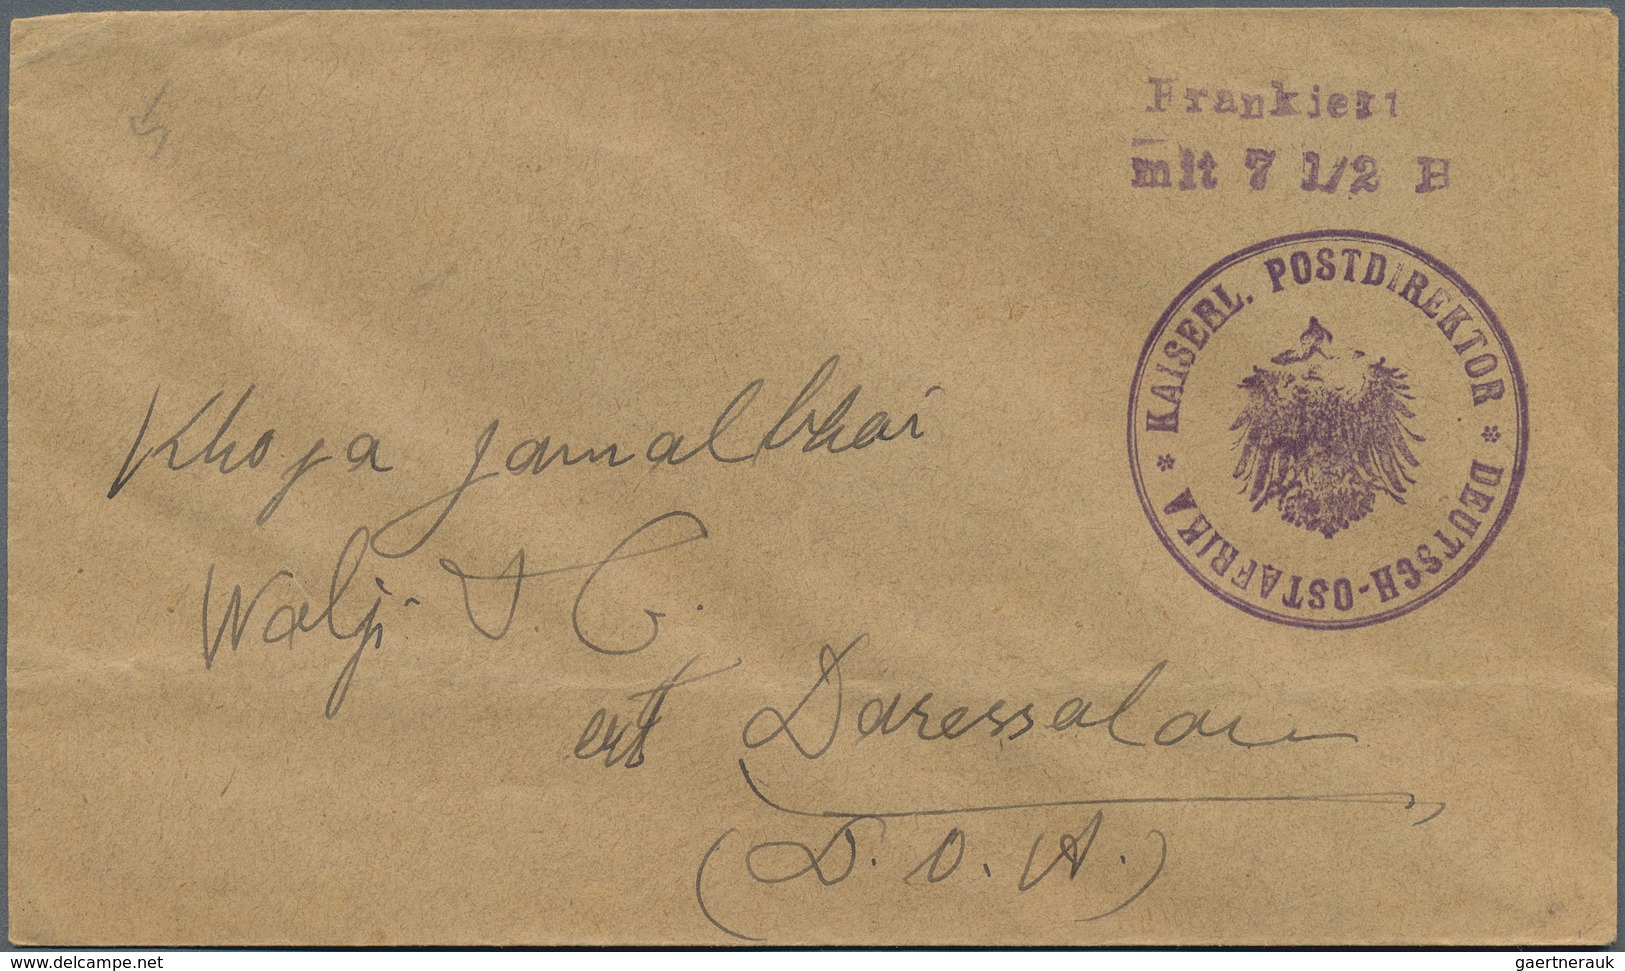 31853 Deutsche Kolonien: 1919, hochinteressanter kleiner Posten von 14 Belegen mit teils besseren Stempeln